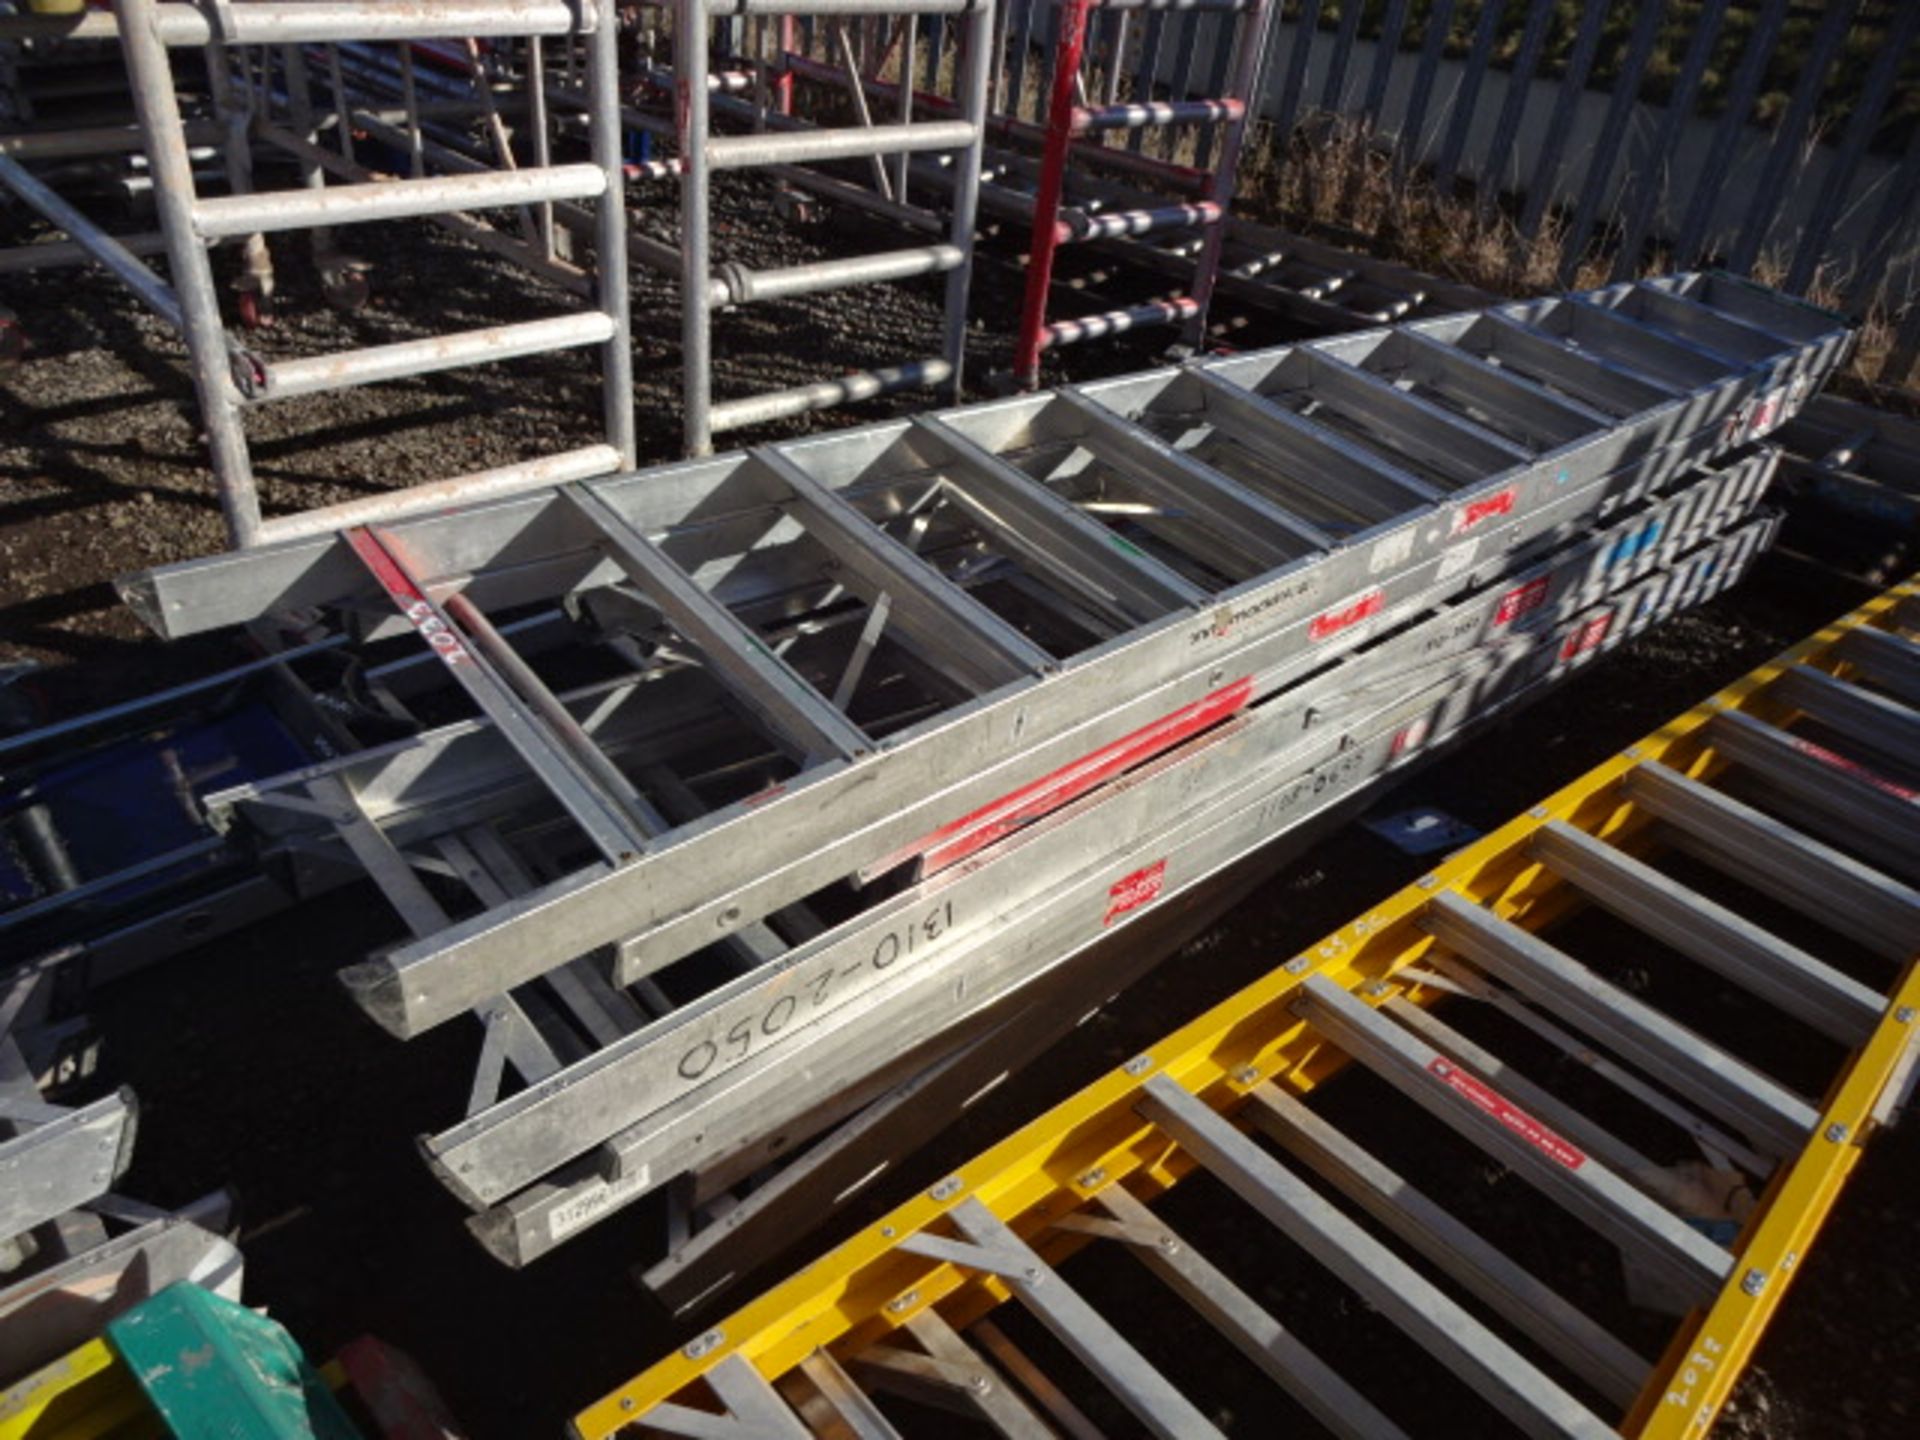 5 x aluminium step ladders